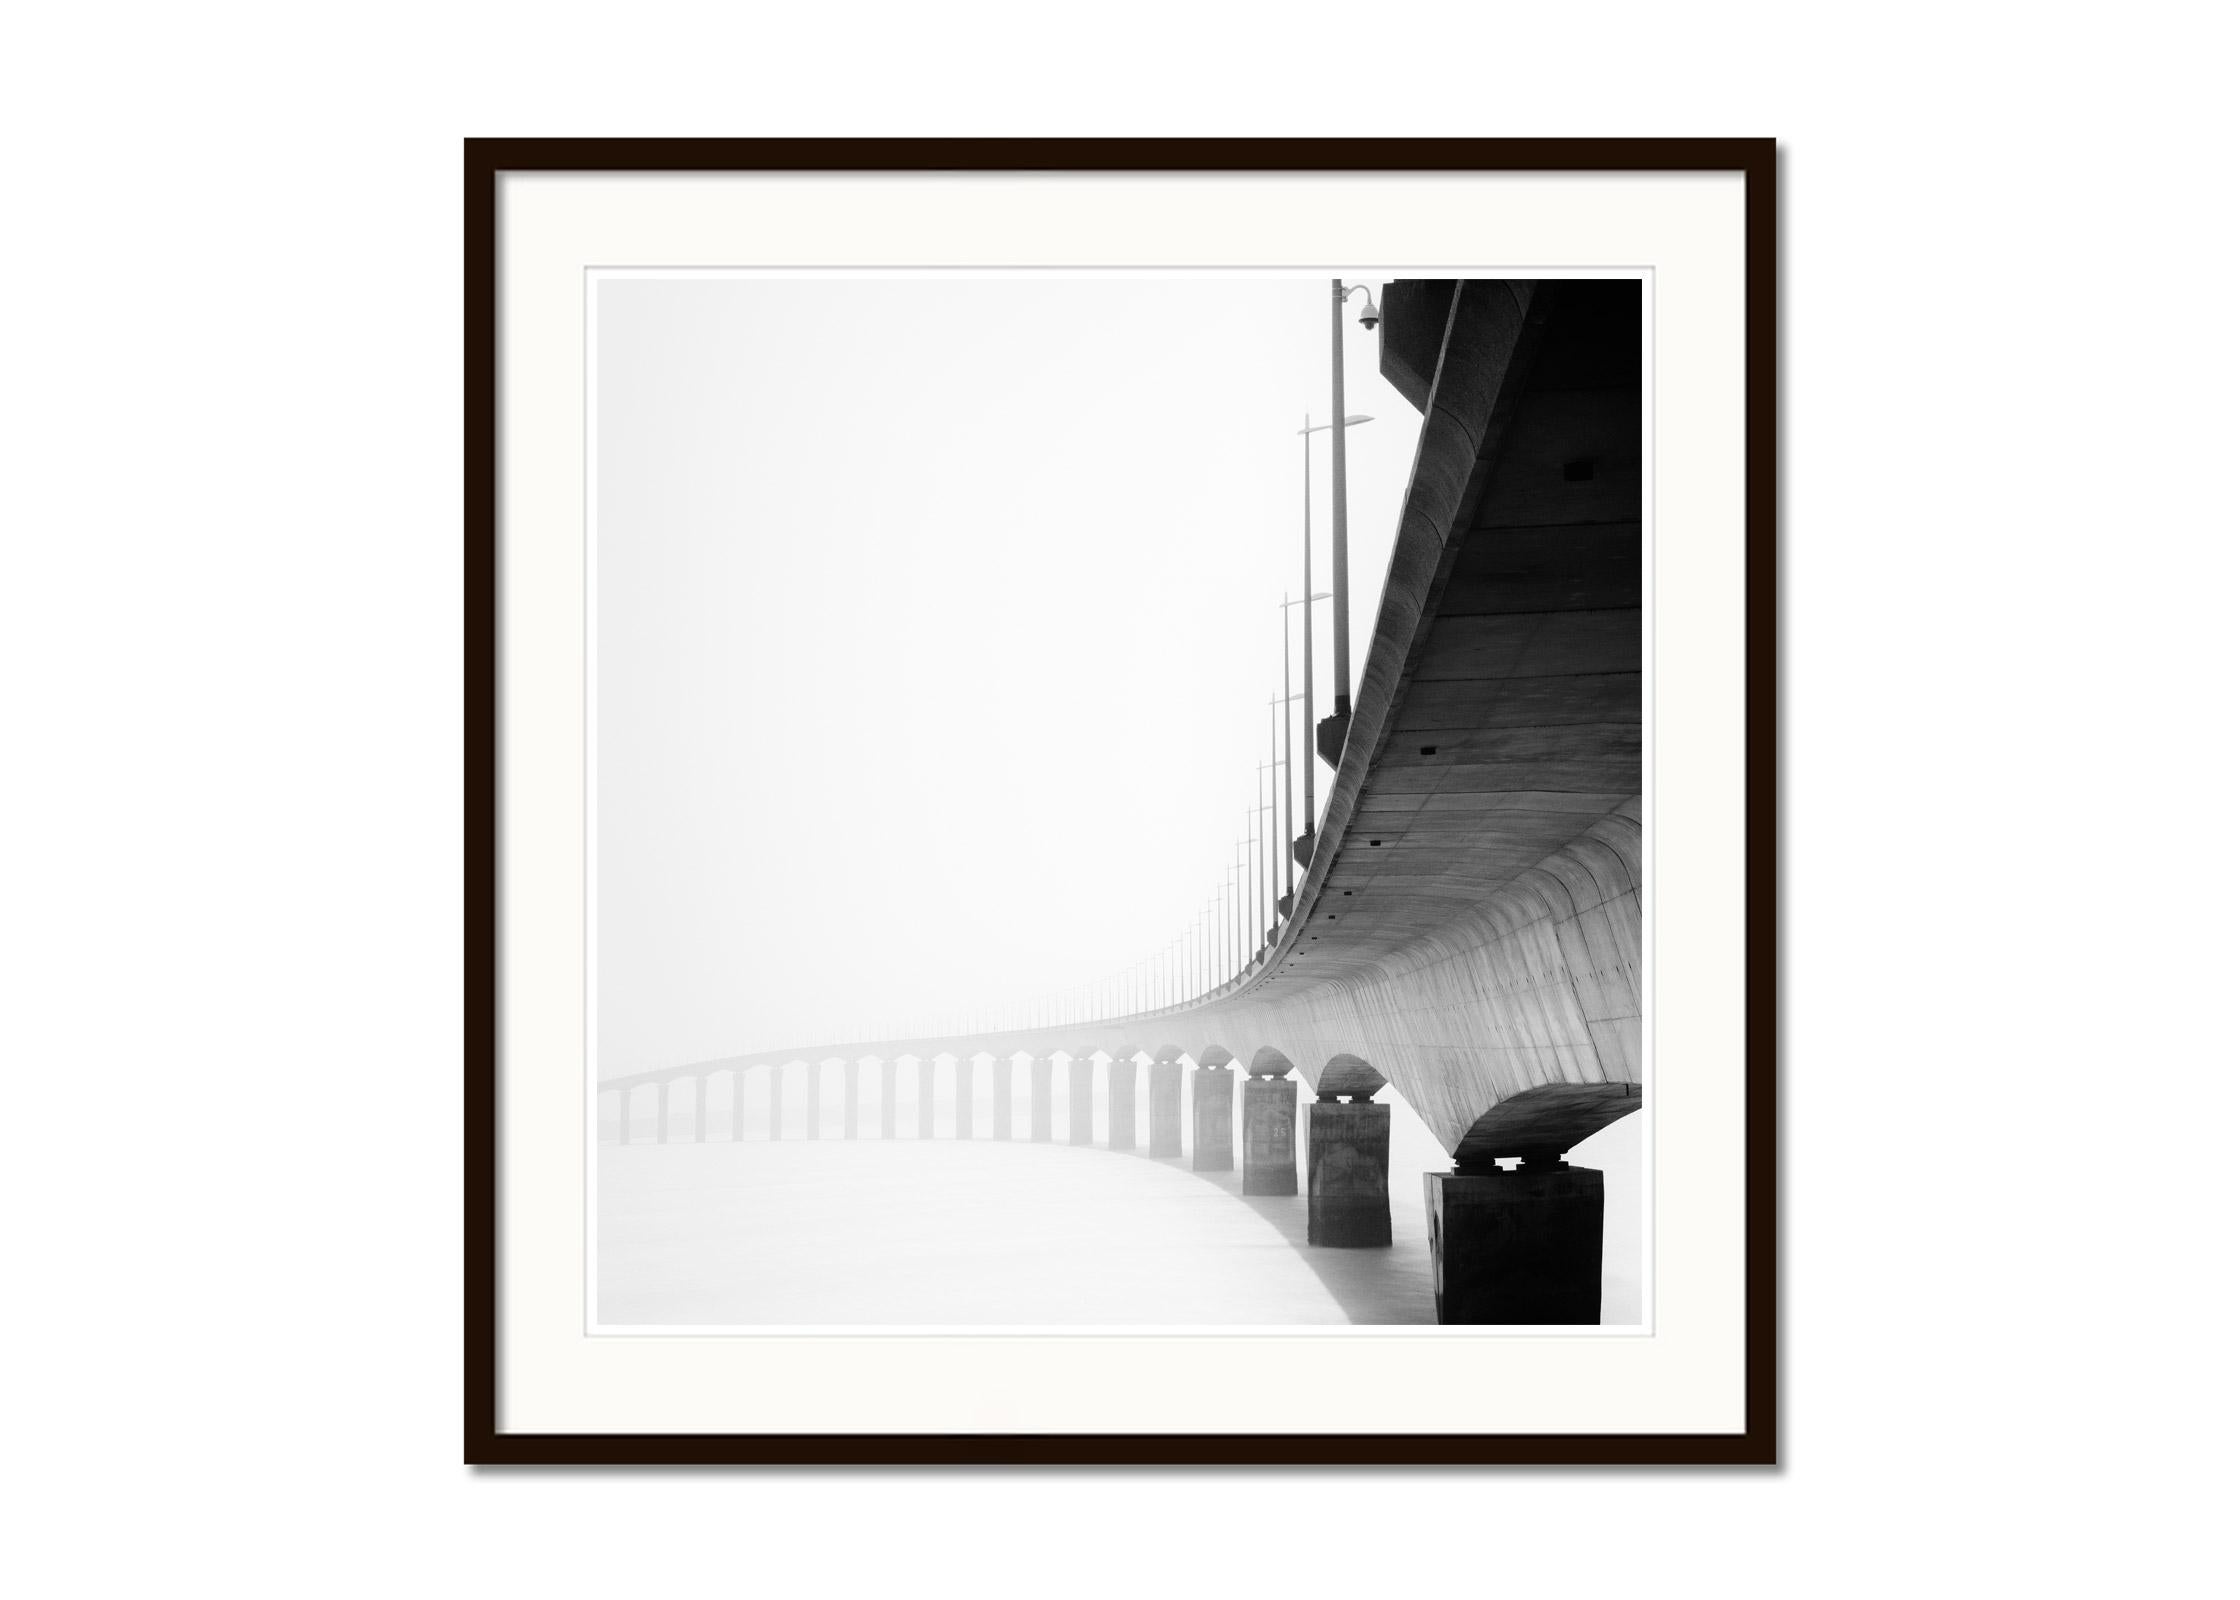 le de Re Bridge, architectural detail, France, black white landscape photography - Gray Landscape Photograph by Gerald Berghammer